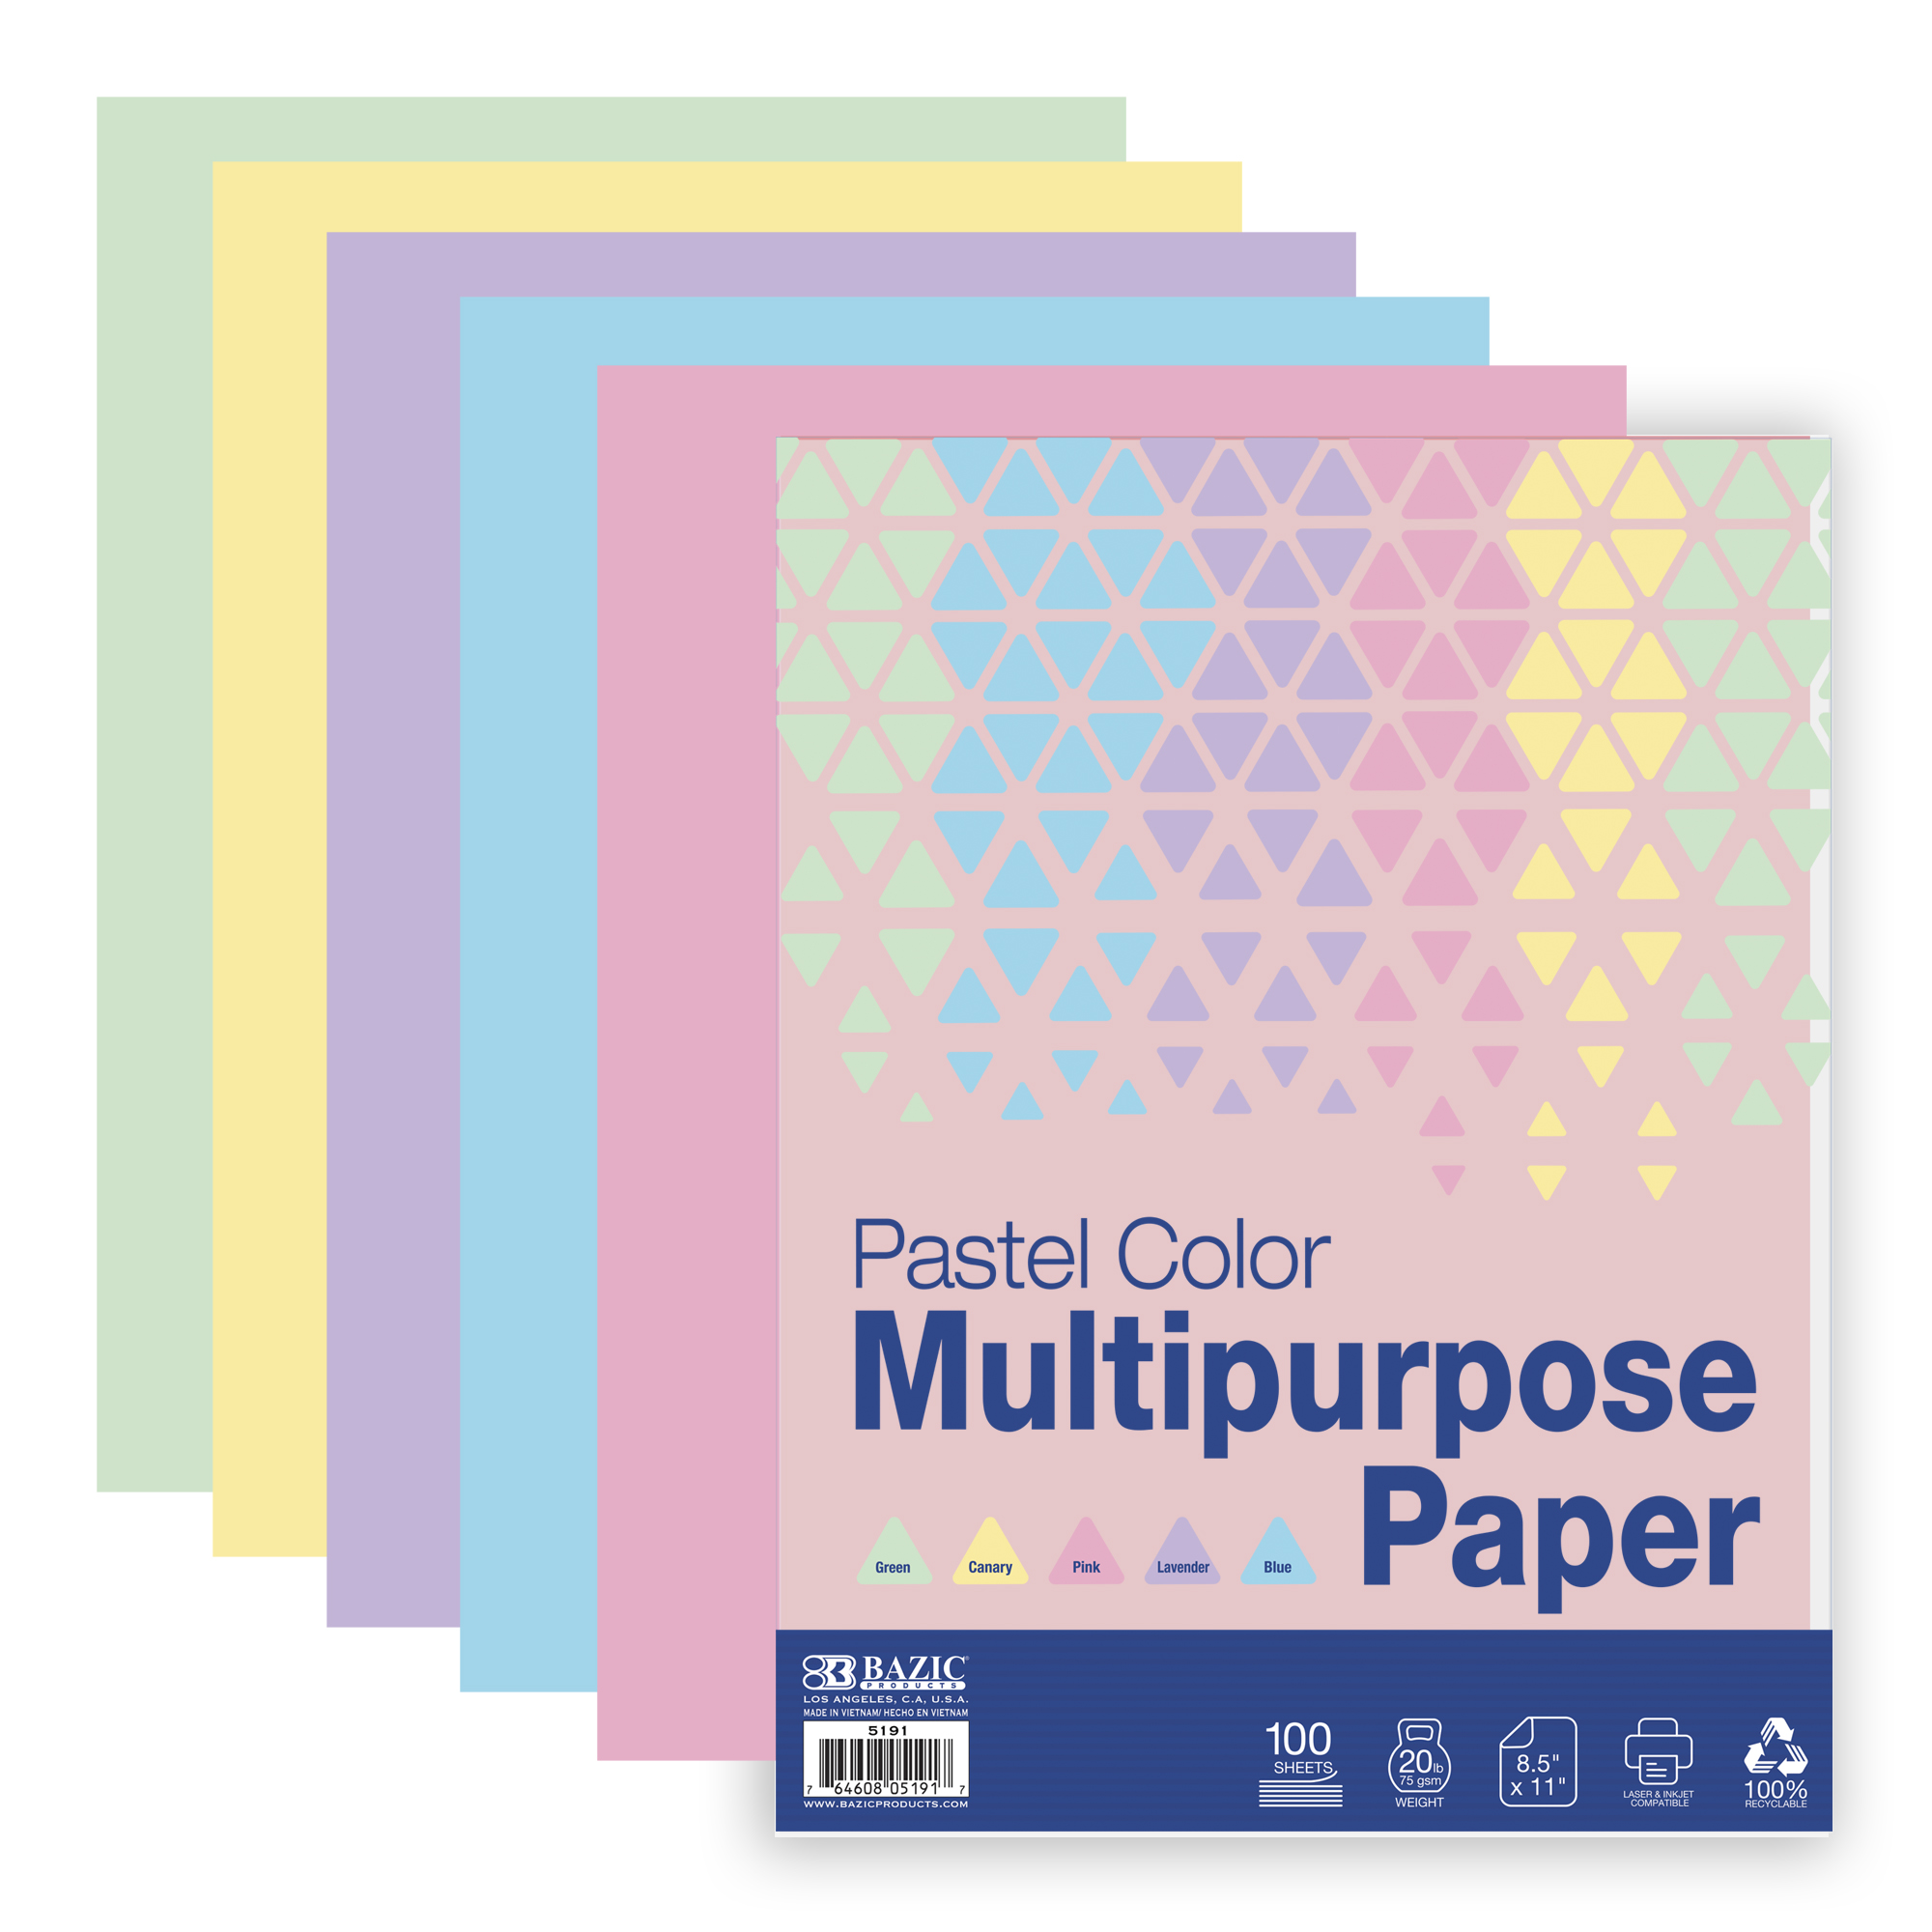 Pastel Color Multipurpose Paper 100 Ct.